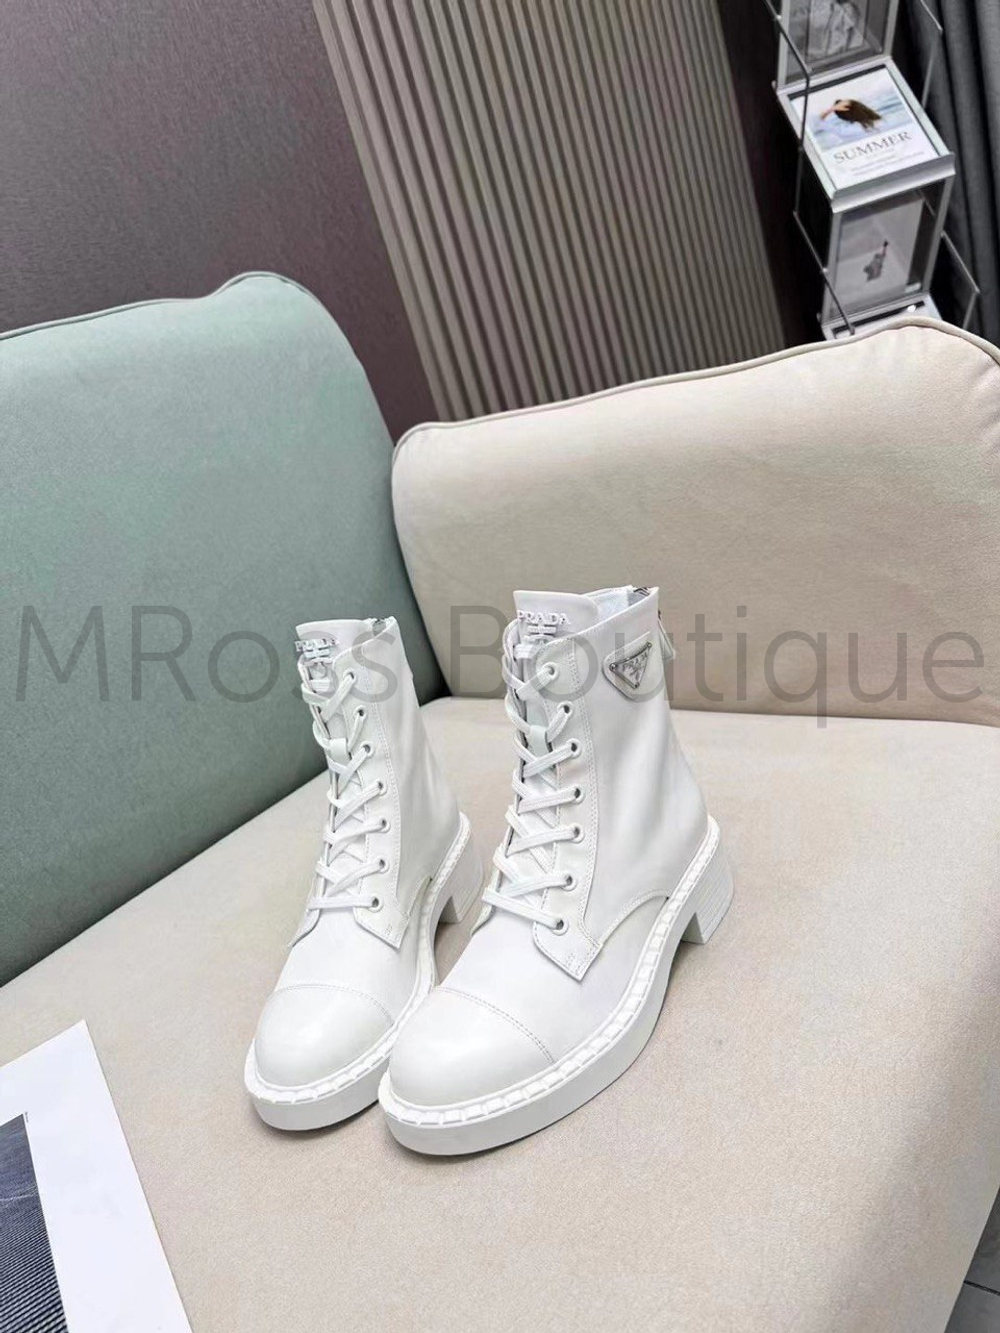 Белые нейлоновые ботинки Прада Prada на шнурках и с молнией сзади